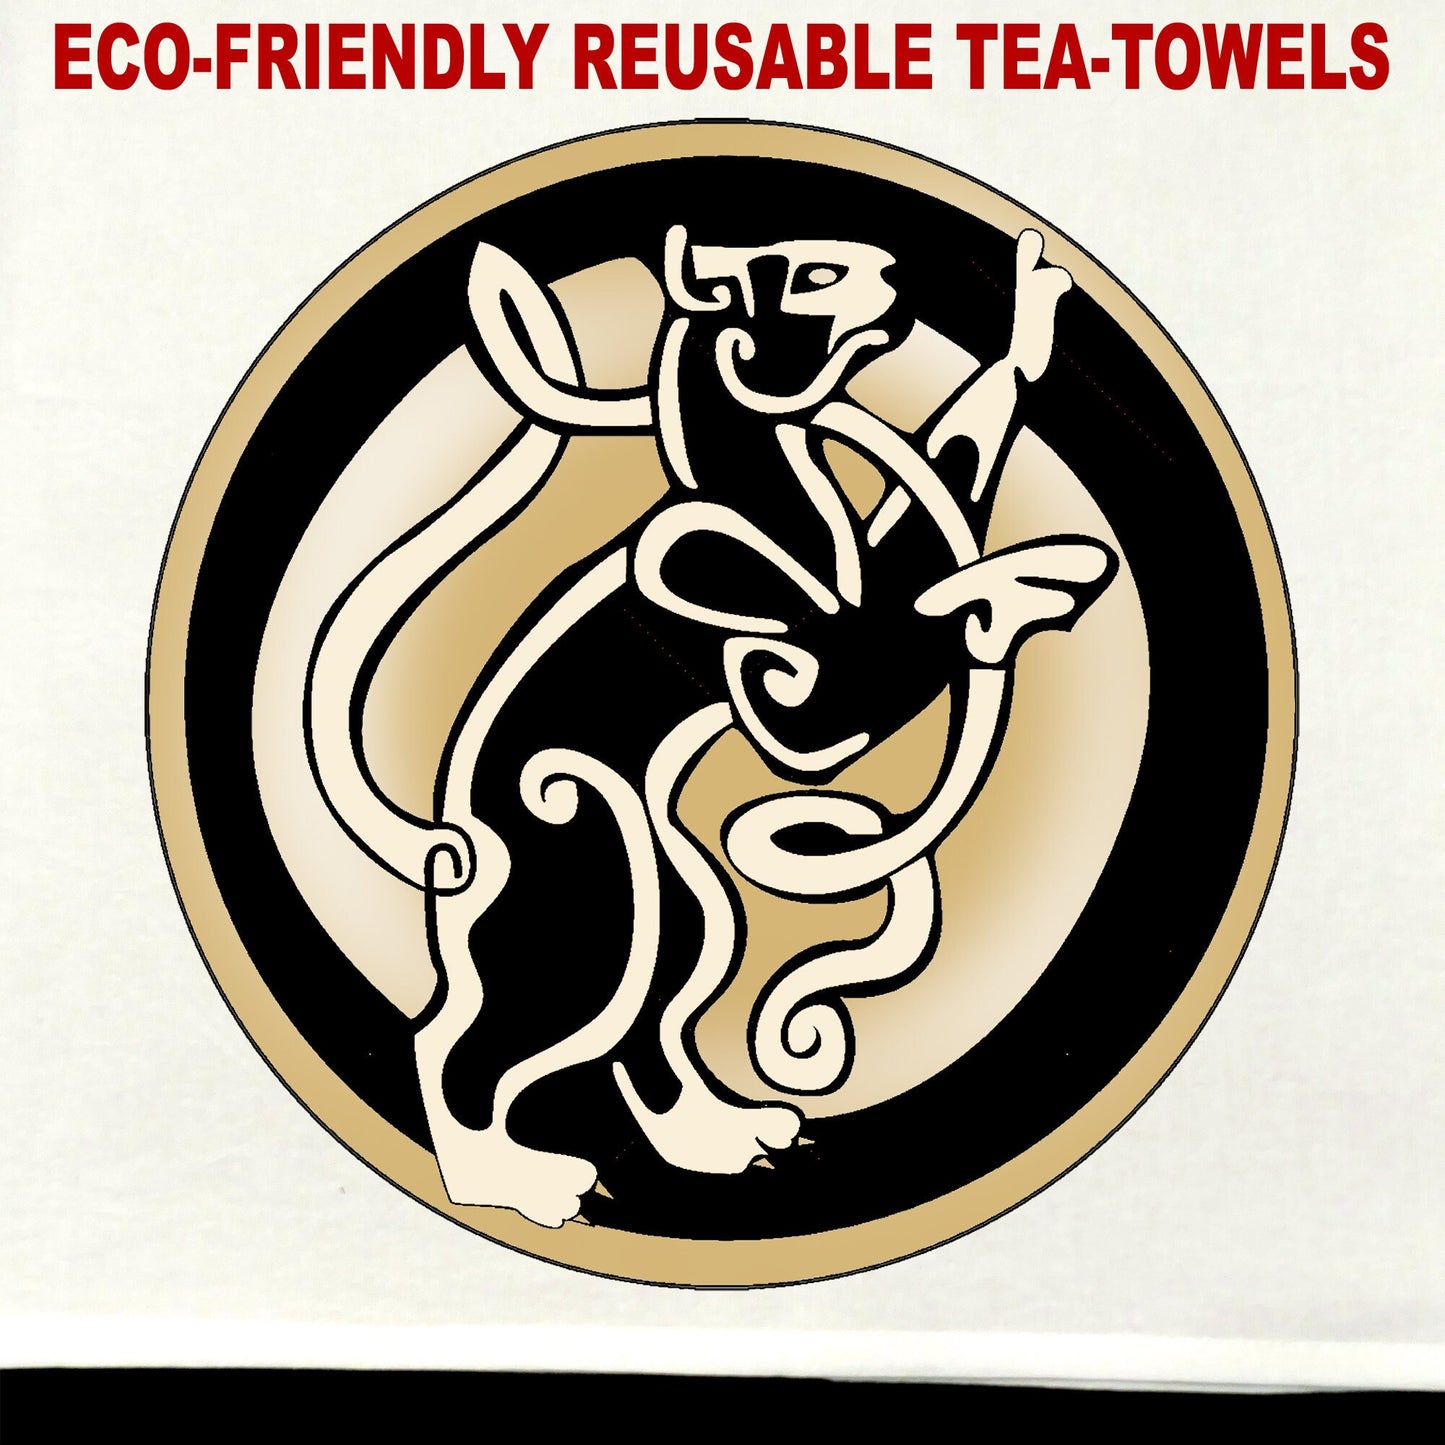 Knotwork Cat Tea Towel / tea towel / dish towel / hand towel / reusable wipe / kitchen gift / kitchen deco